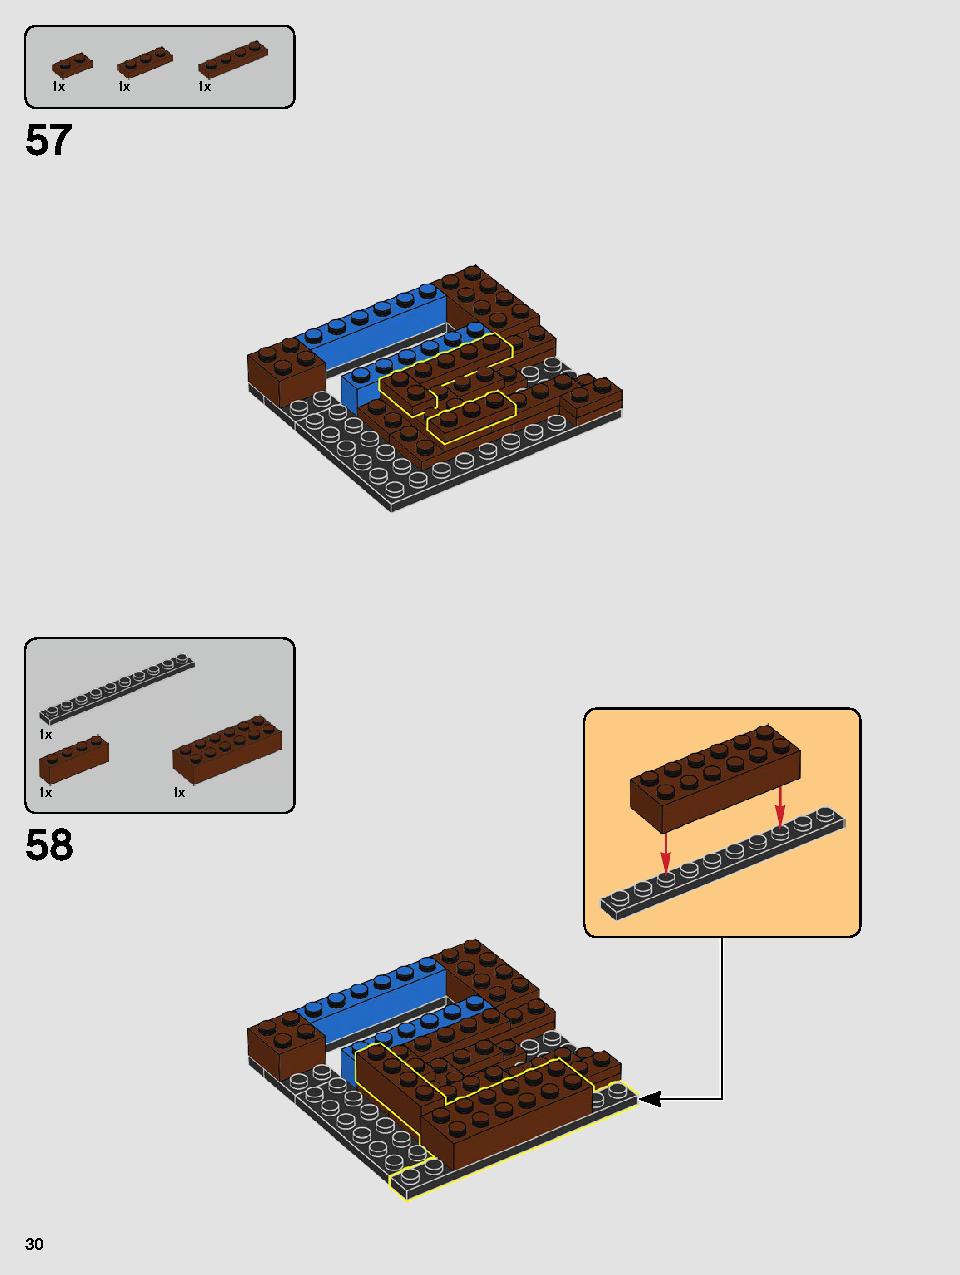 ヨーダ™ 75255 レゴの商品情報 レゴの説明書・組立方法 30 page